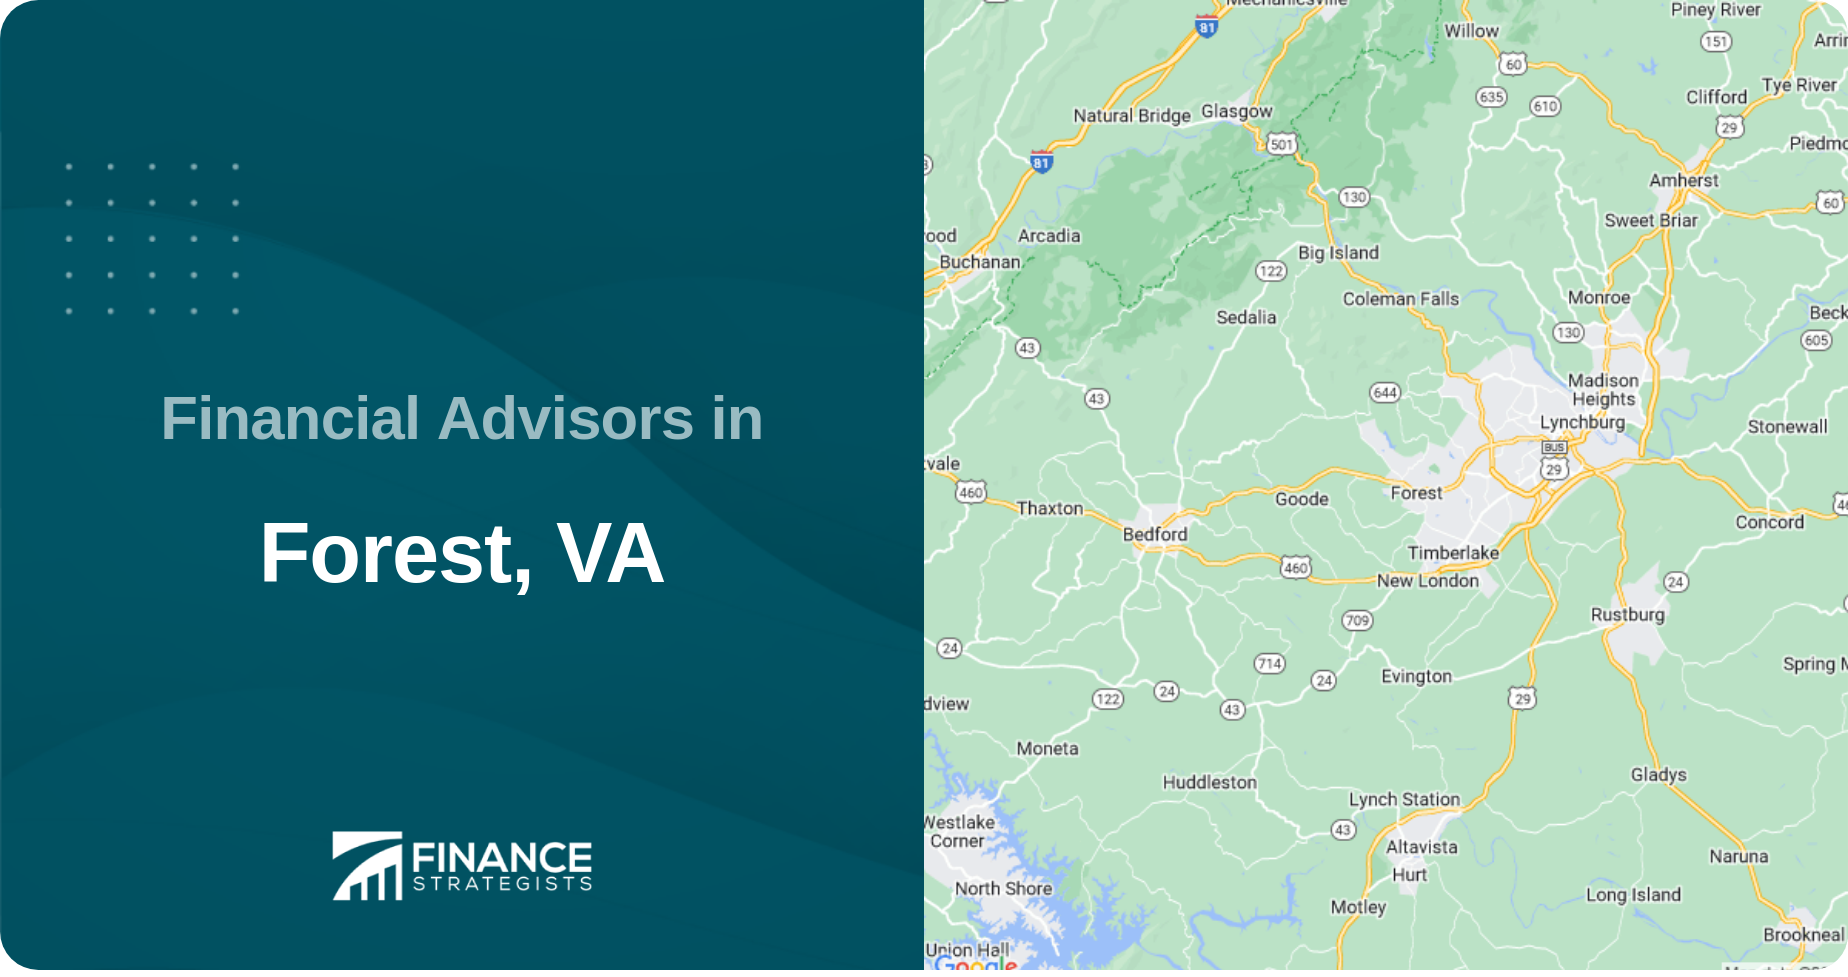 Financial Advisors in Forest, VA